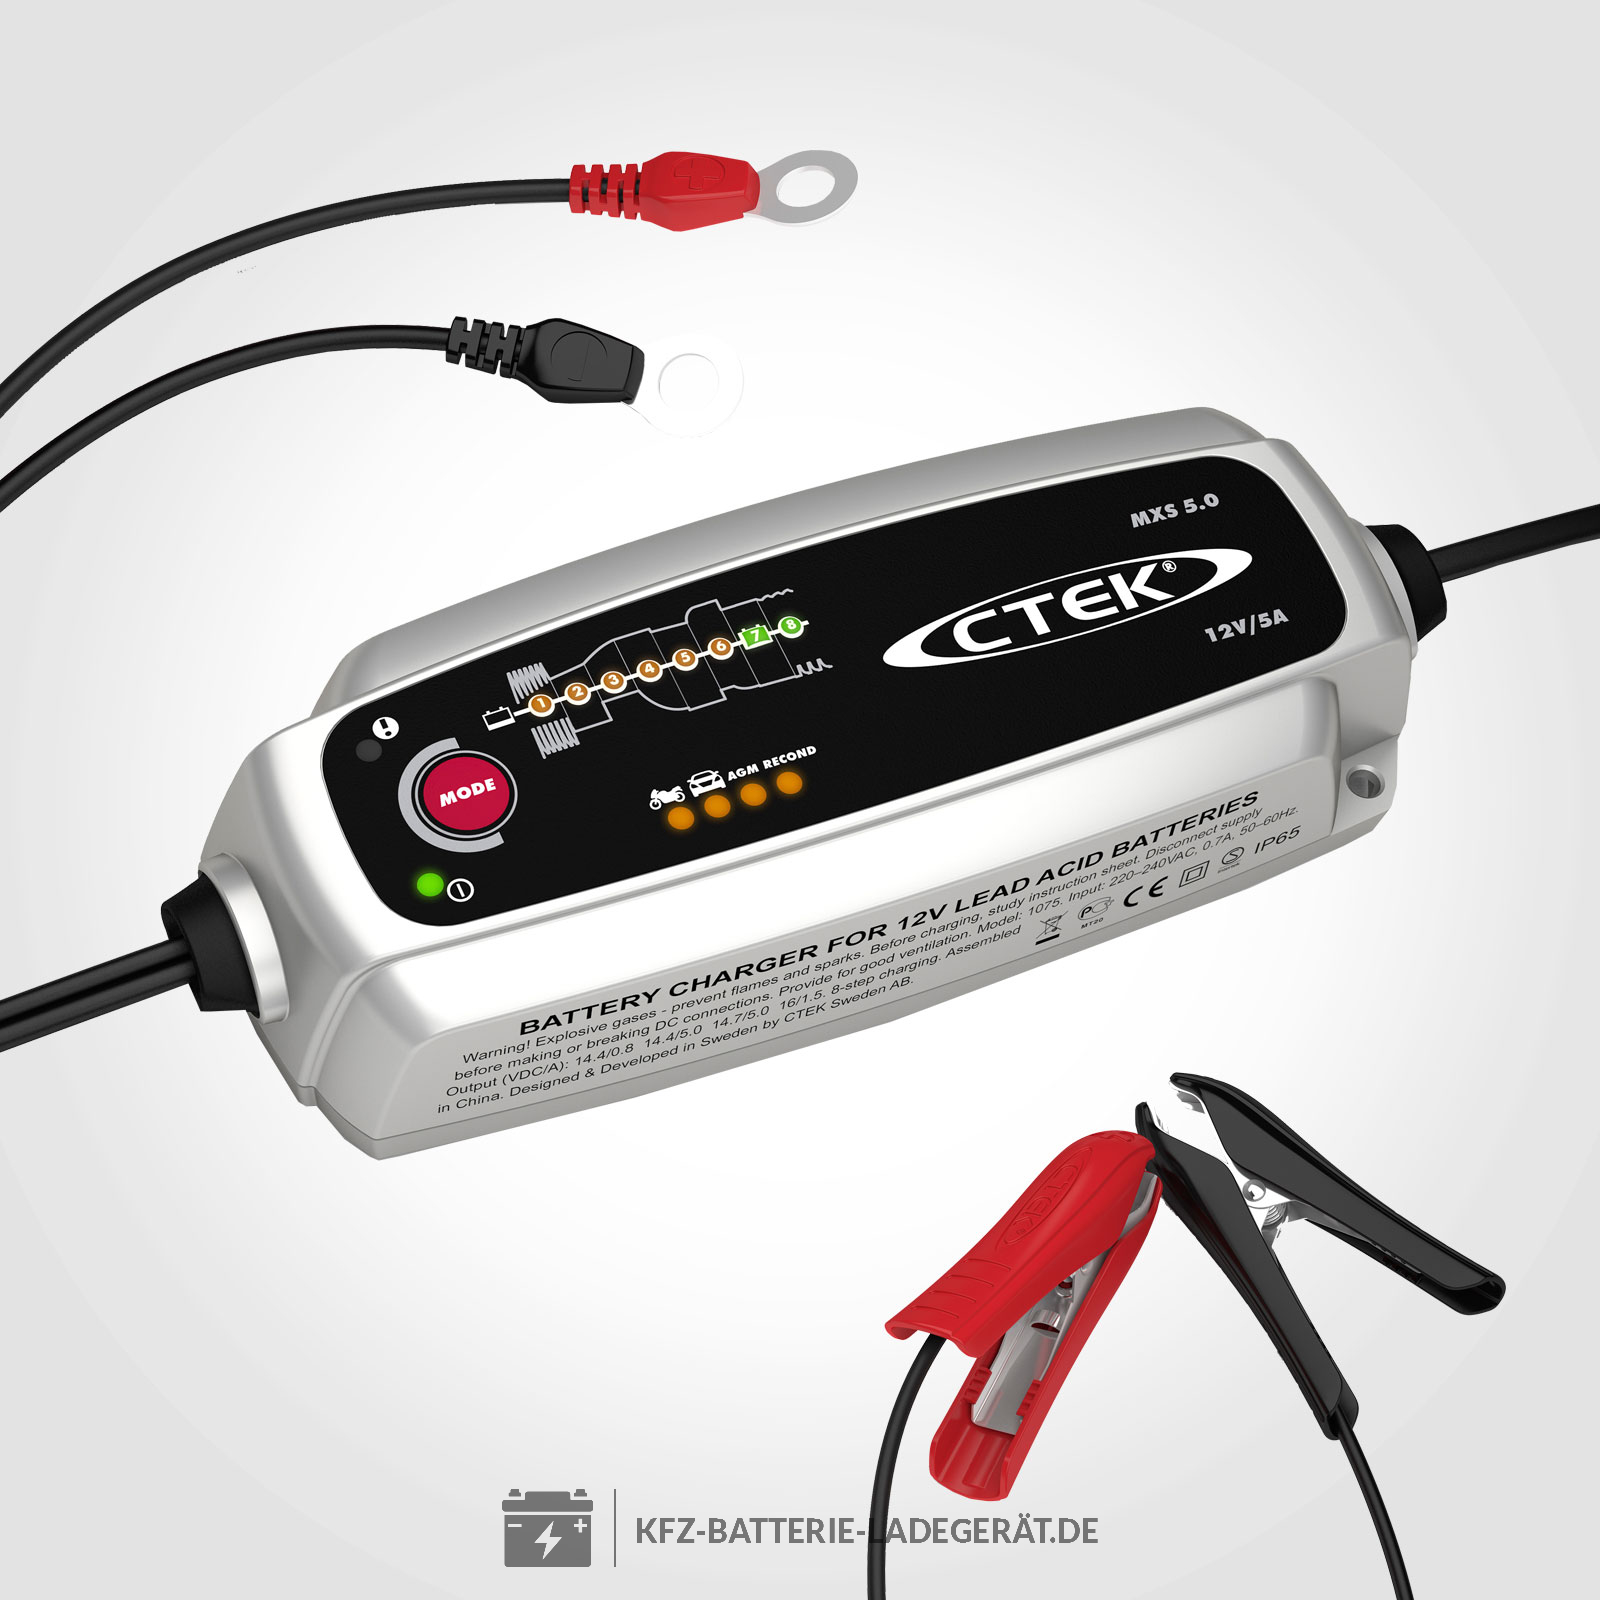 CTEK Batterie Ladegerät MXS 5.0 - CTEK Batterie Ladegeräte